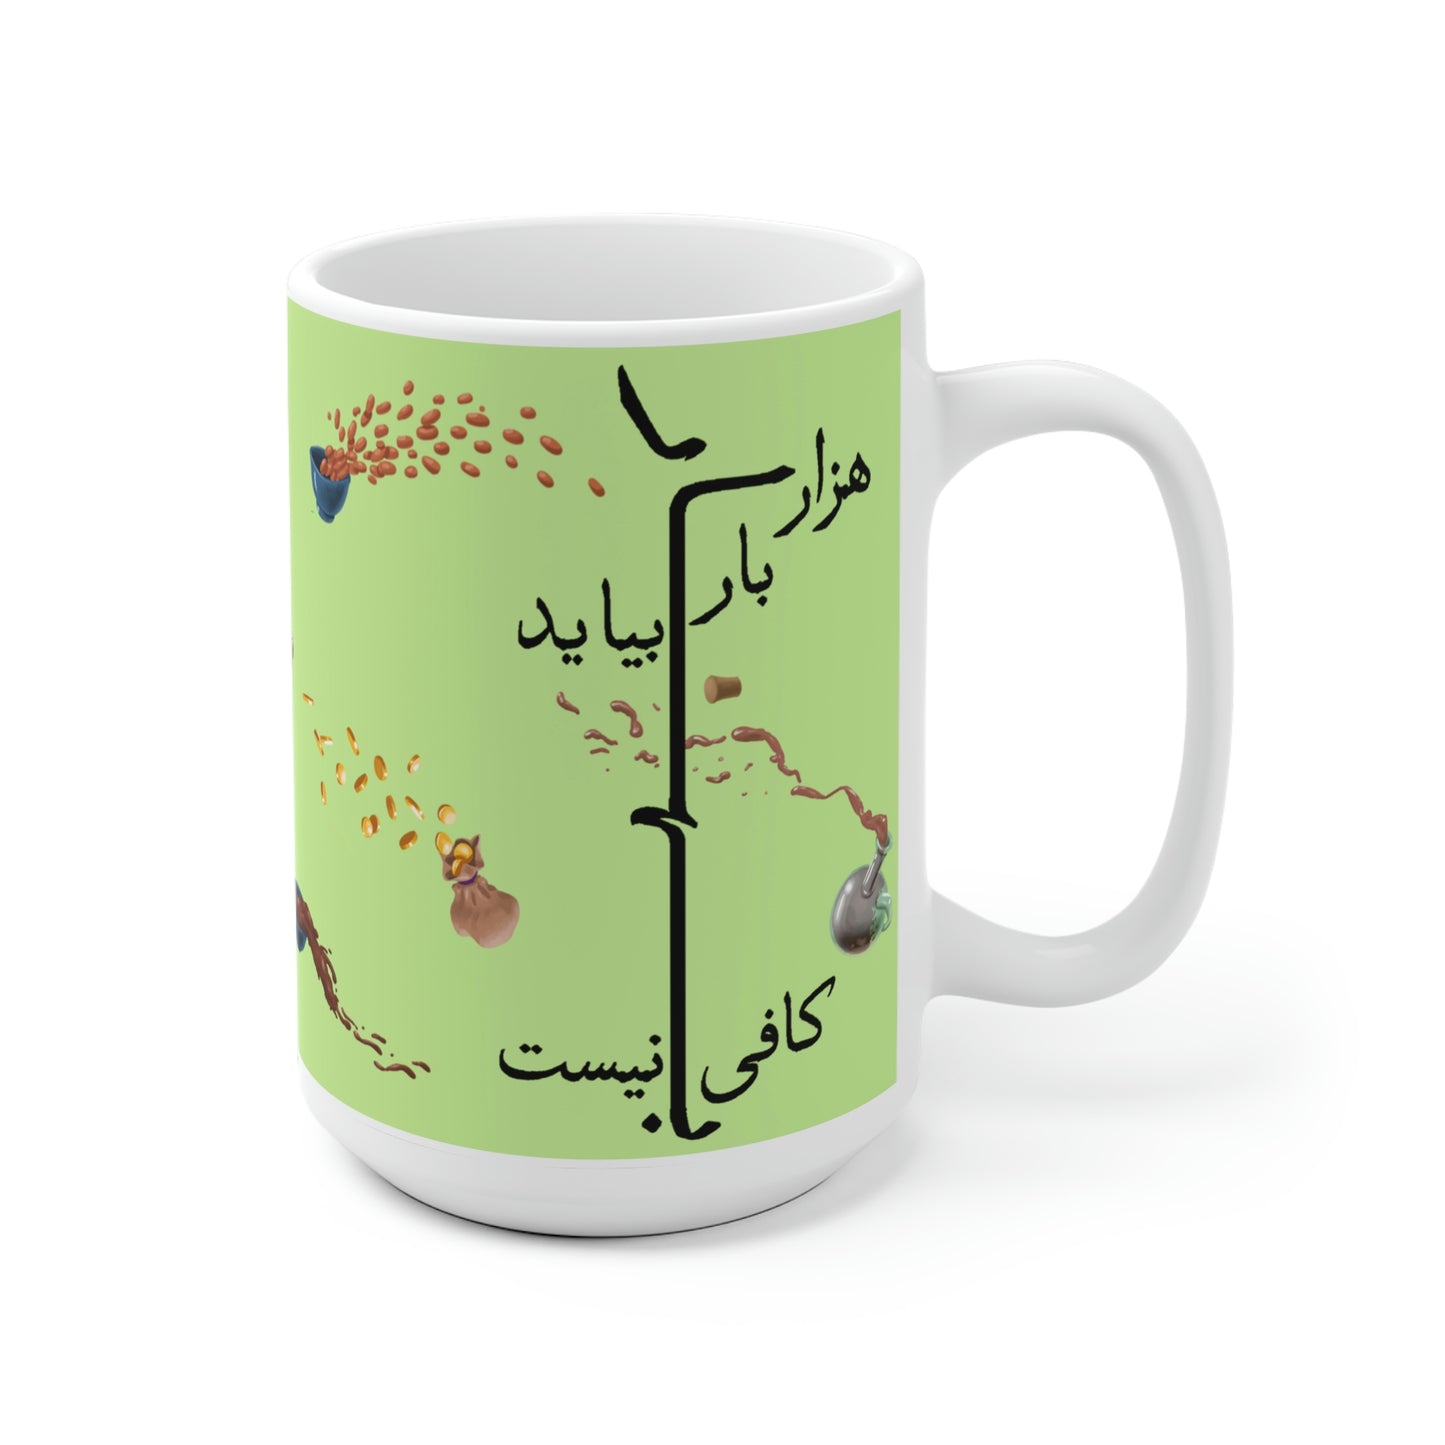 Bahar Norooz Mug